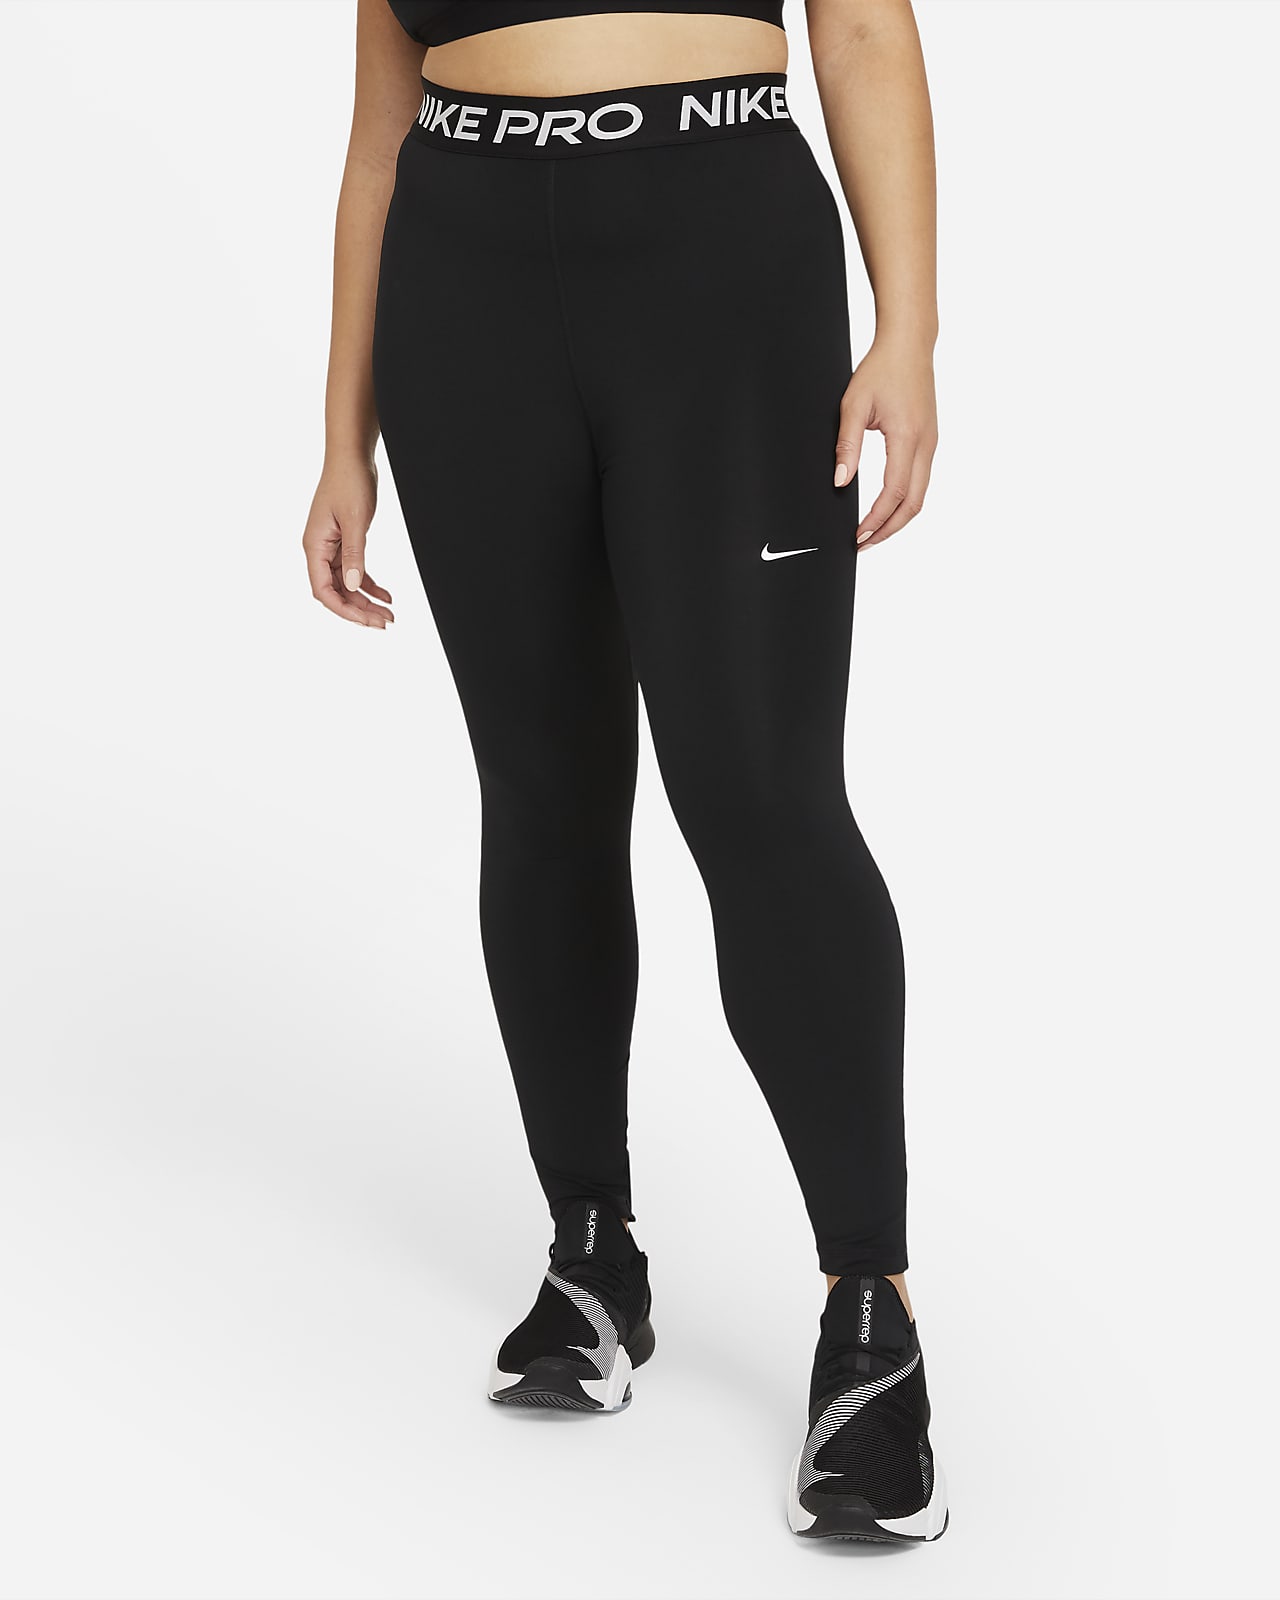 Dámské legíny Nike Pro 365 (větší velikost)